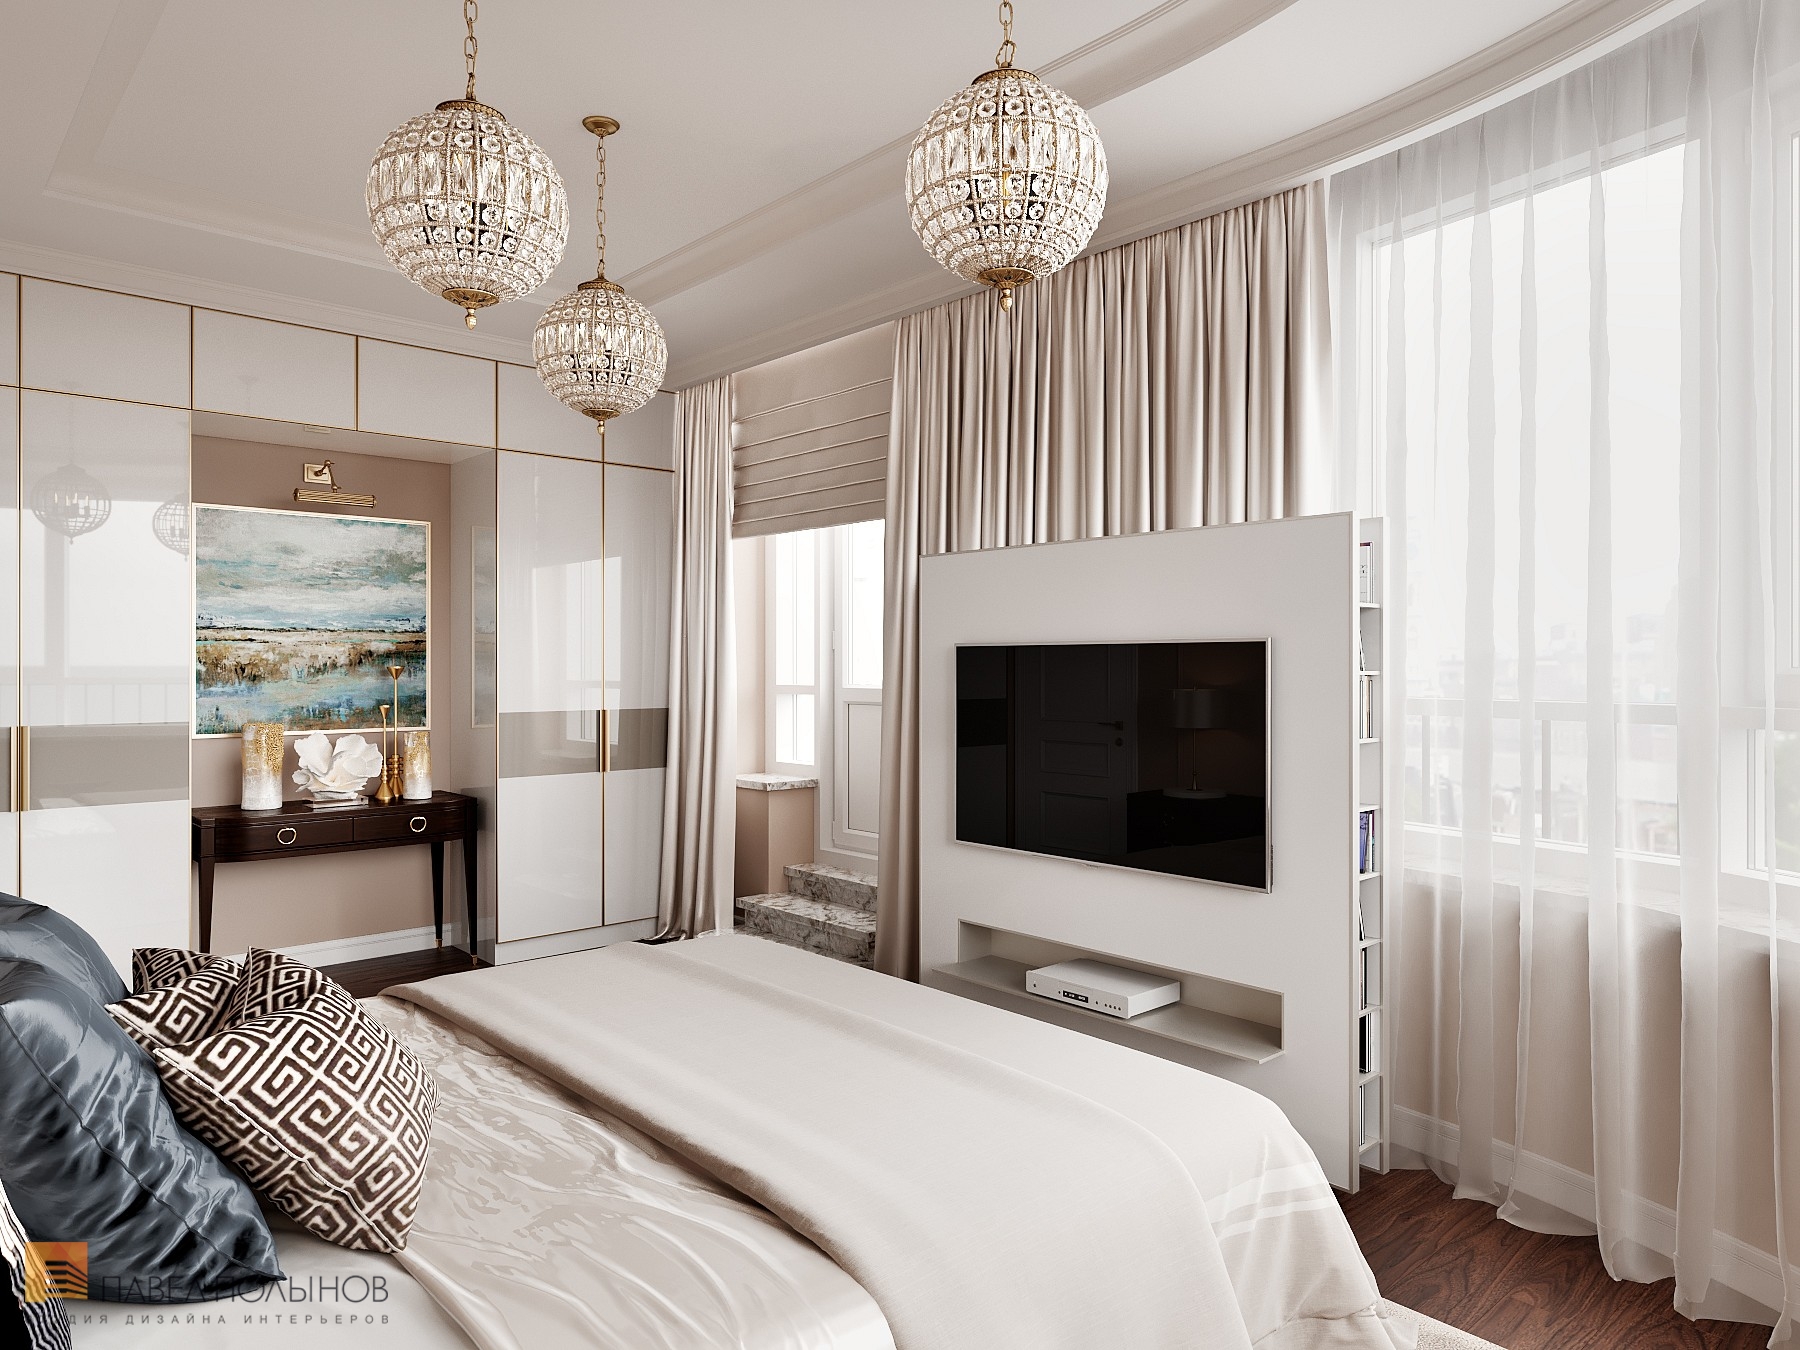 Фото дизайн интерьера спальни из проекта «Интерьер квартиры 200 кв.м. в стиле Ар-деко, ЖК «Граф Орлов»»